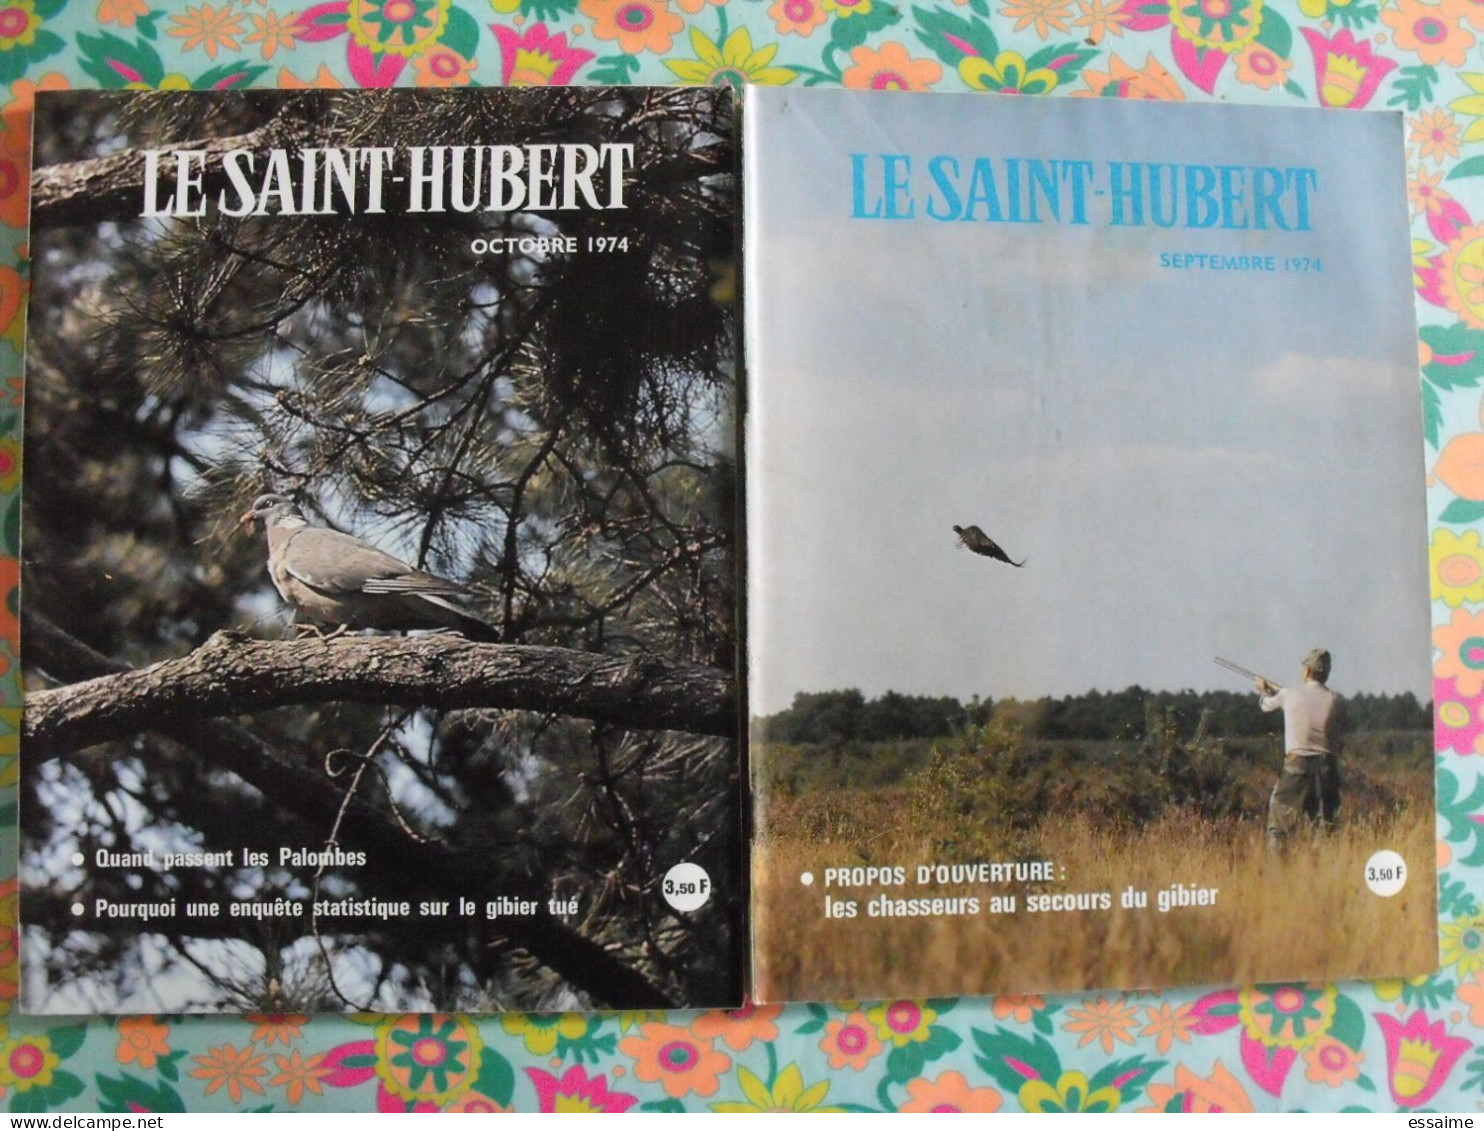 lot de 11 revues Le Saint Hubert de 1974. mensuel. chasse, pêche. de janvier à novembre.